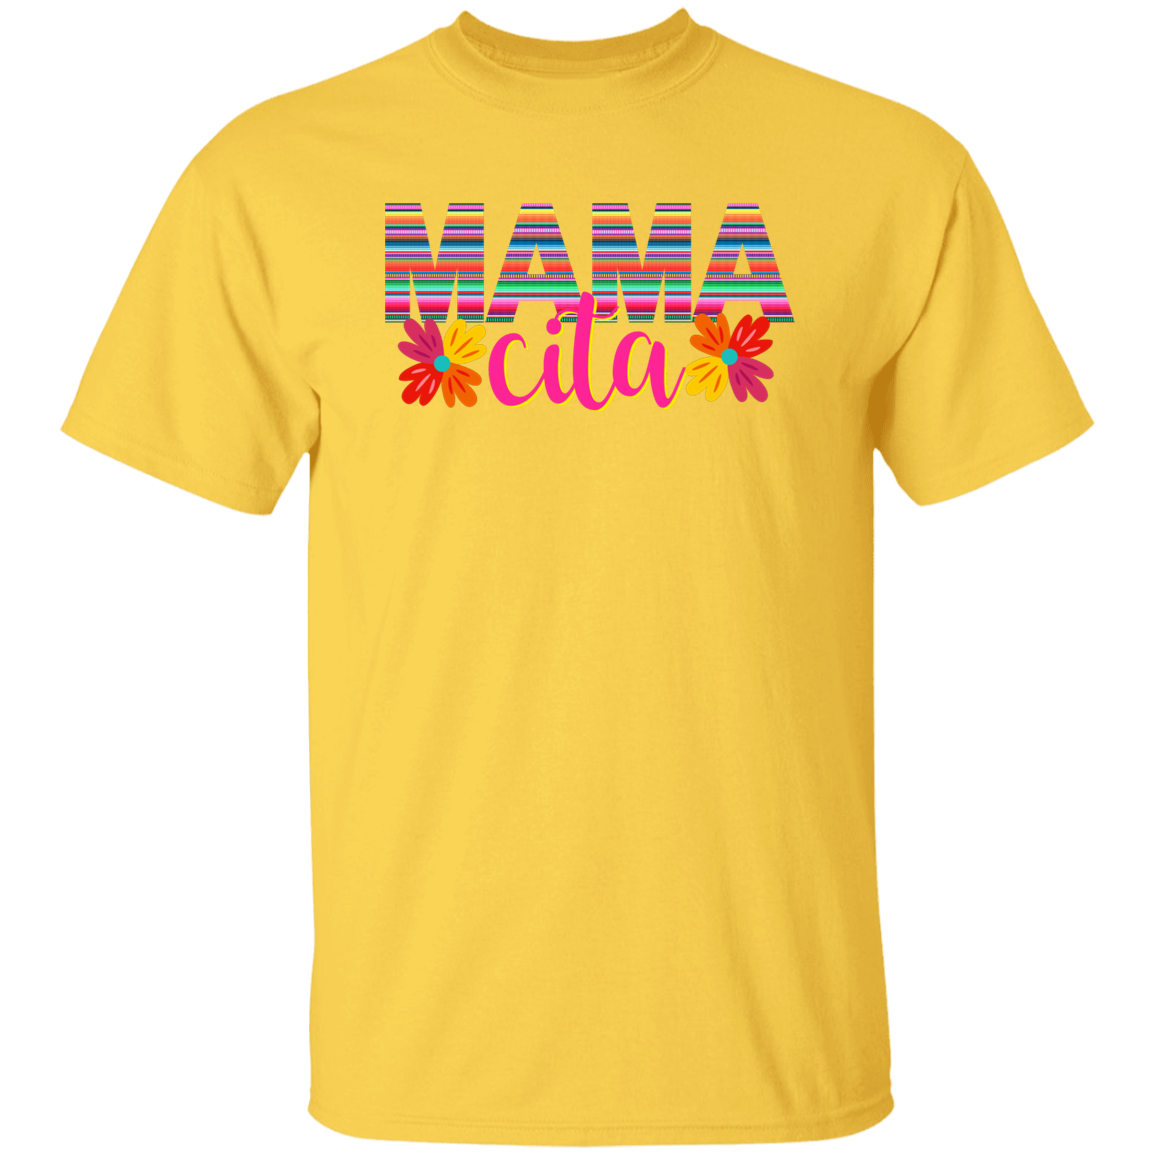 Mamacita flowers shirt